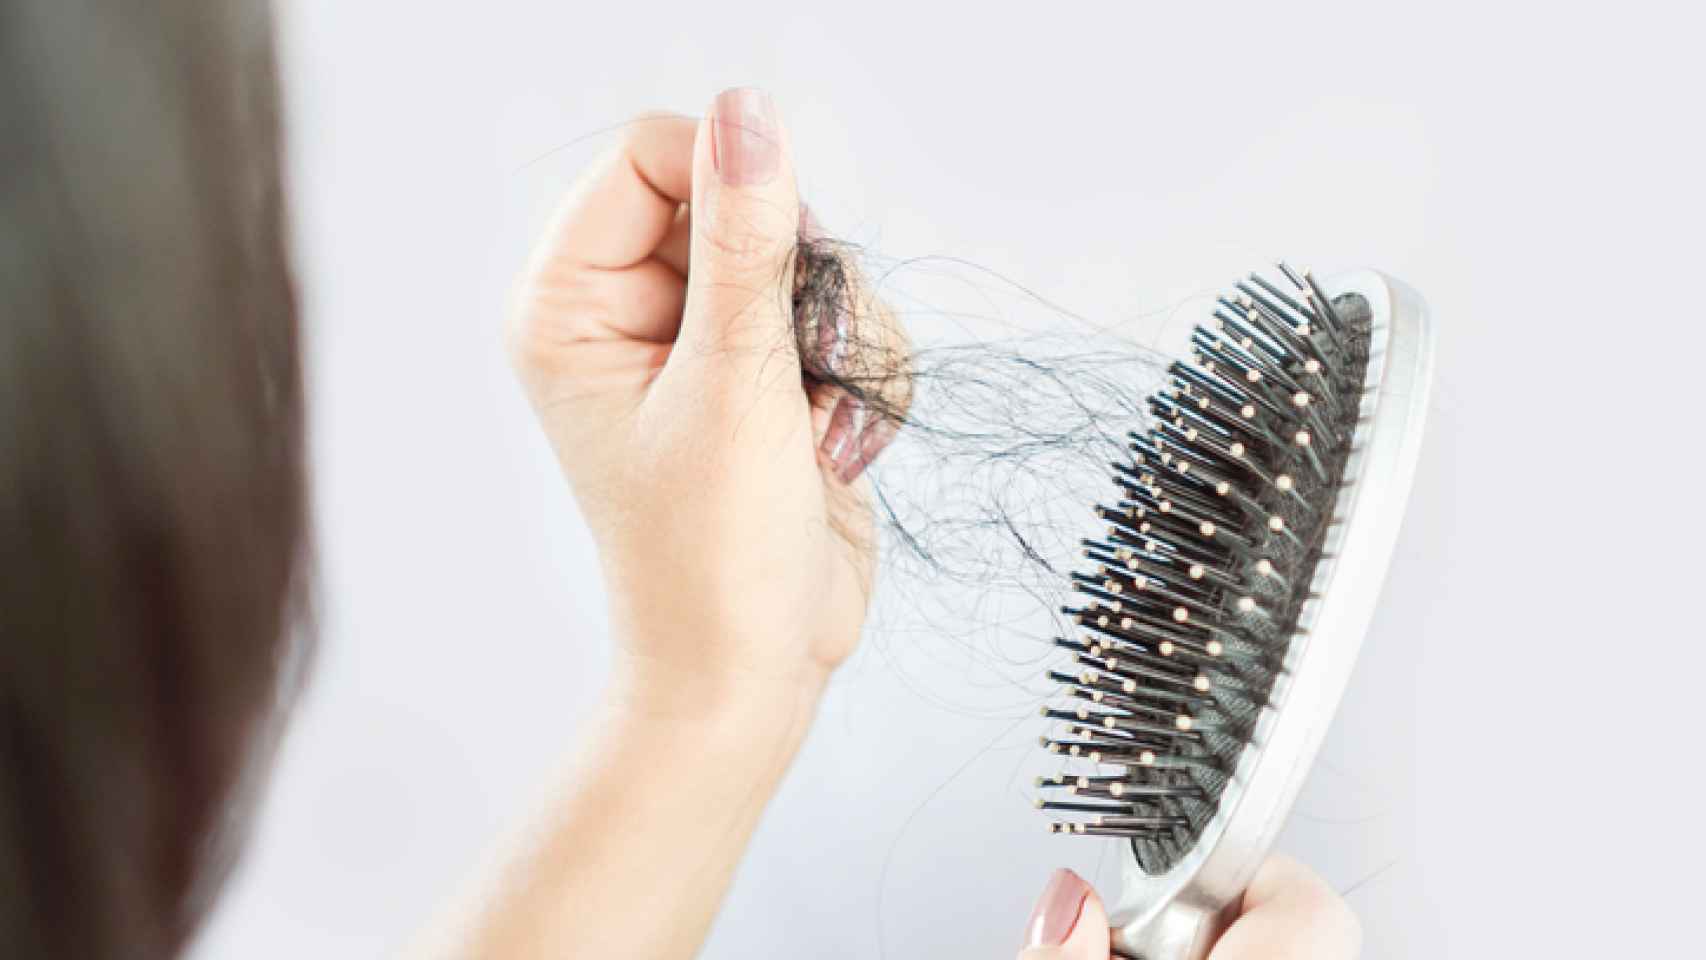 Sencillos trucos caseros para limpiar los cepillos y peines de pelo